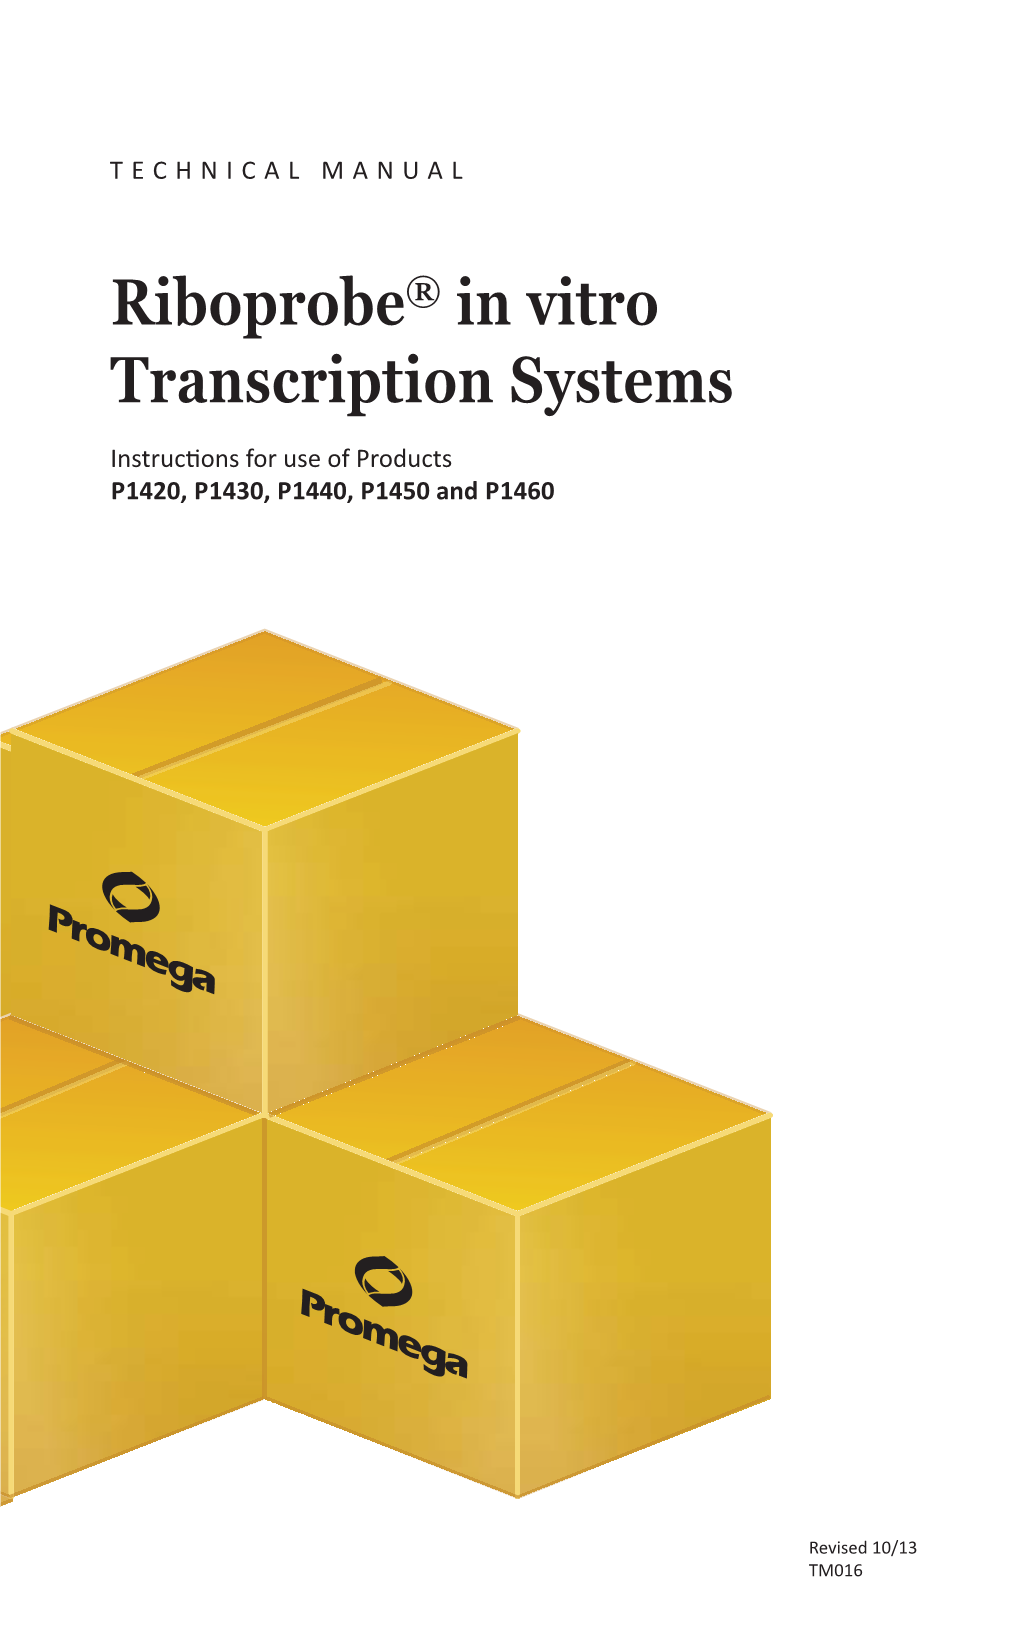 Riboprobe(R) in Vitro Transcription Systems Technical Manual TM016